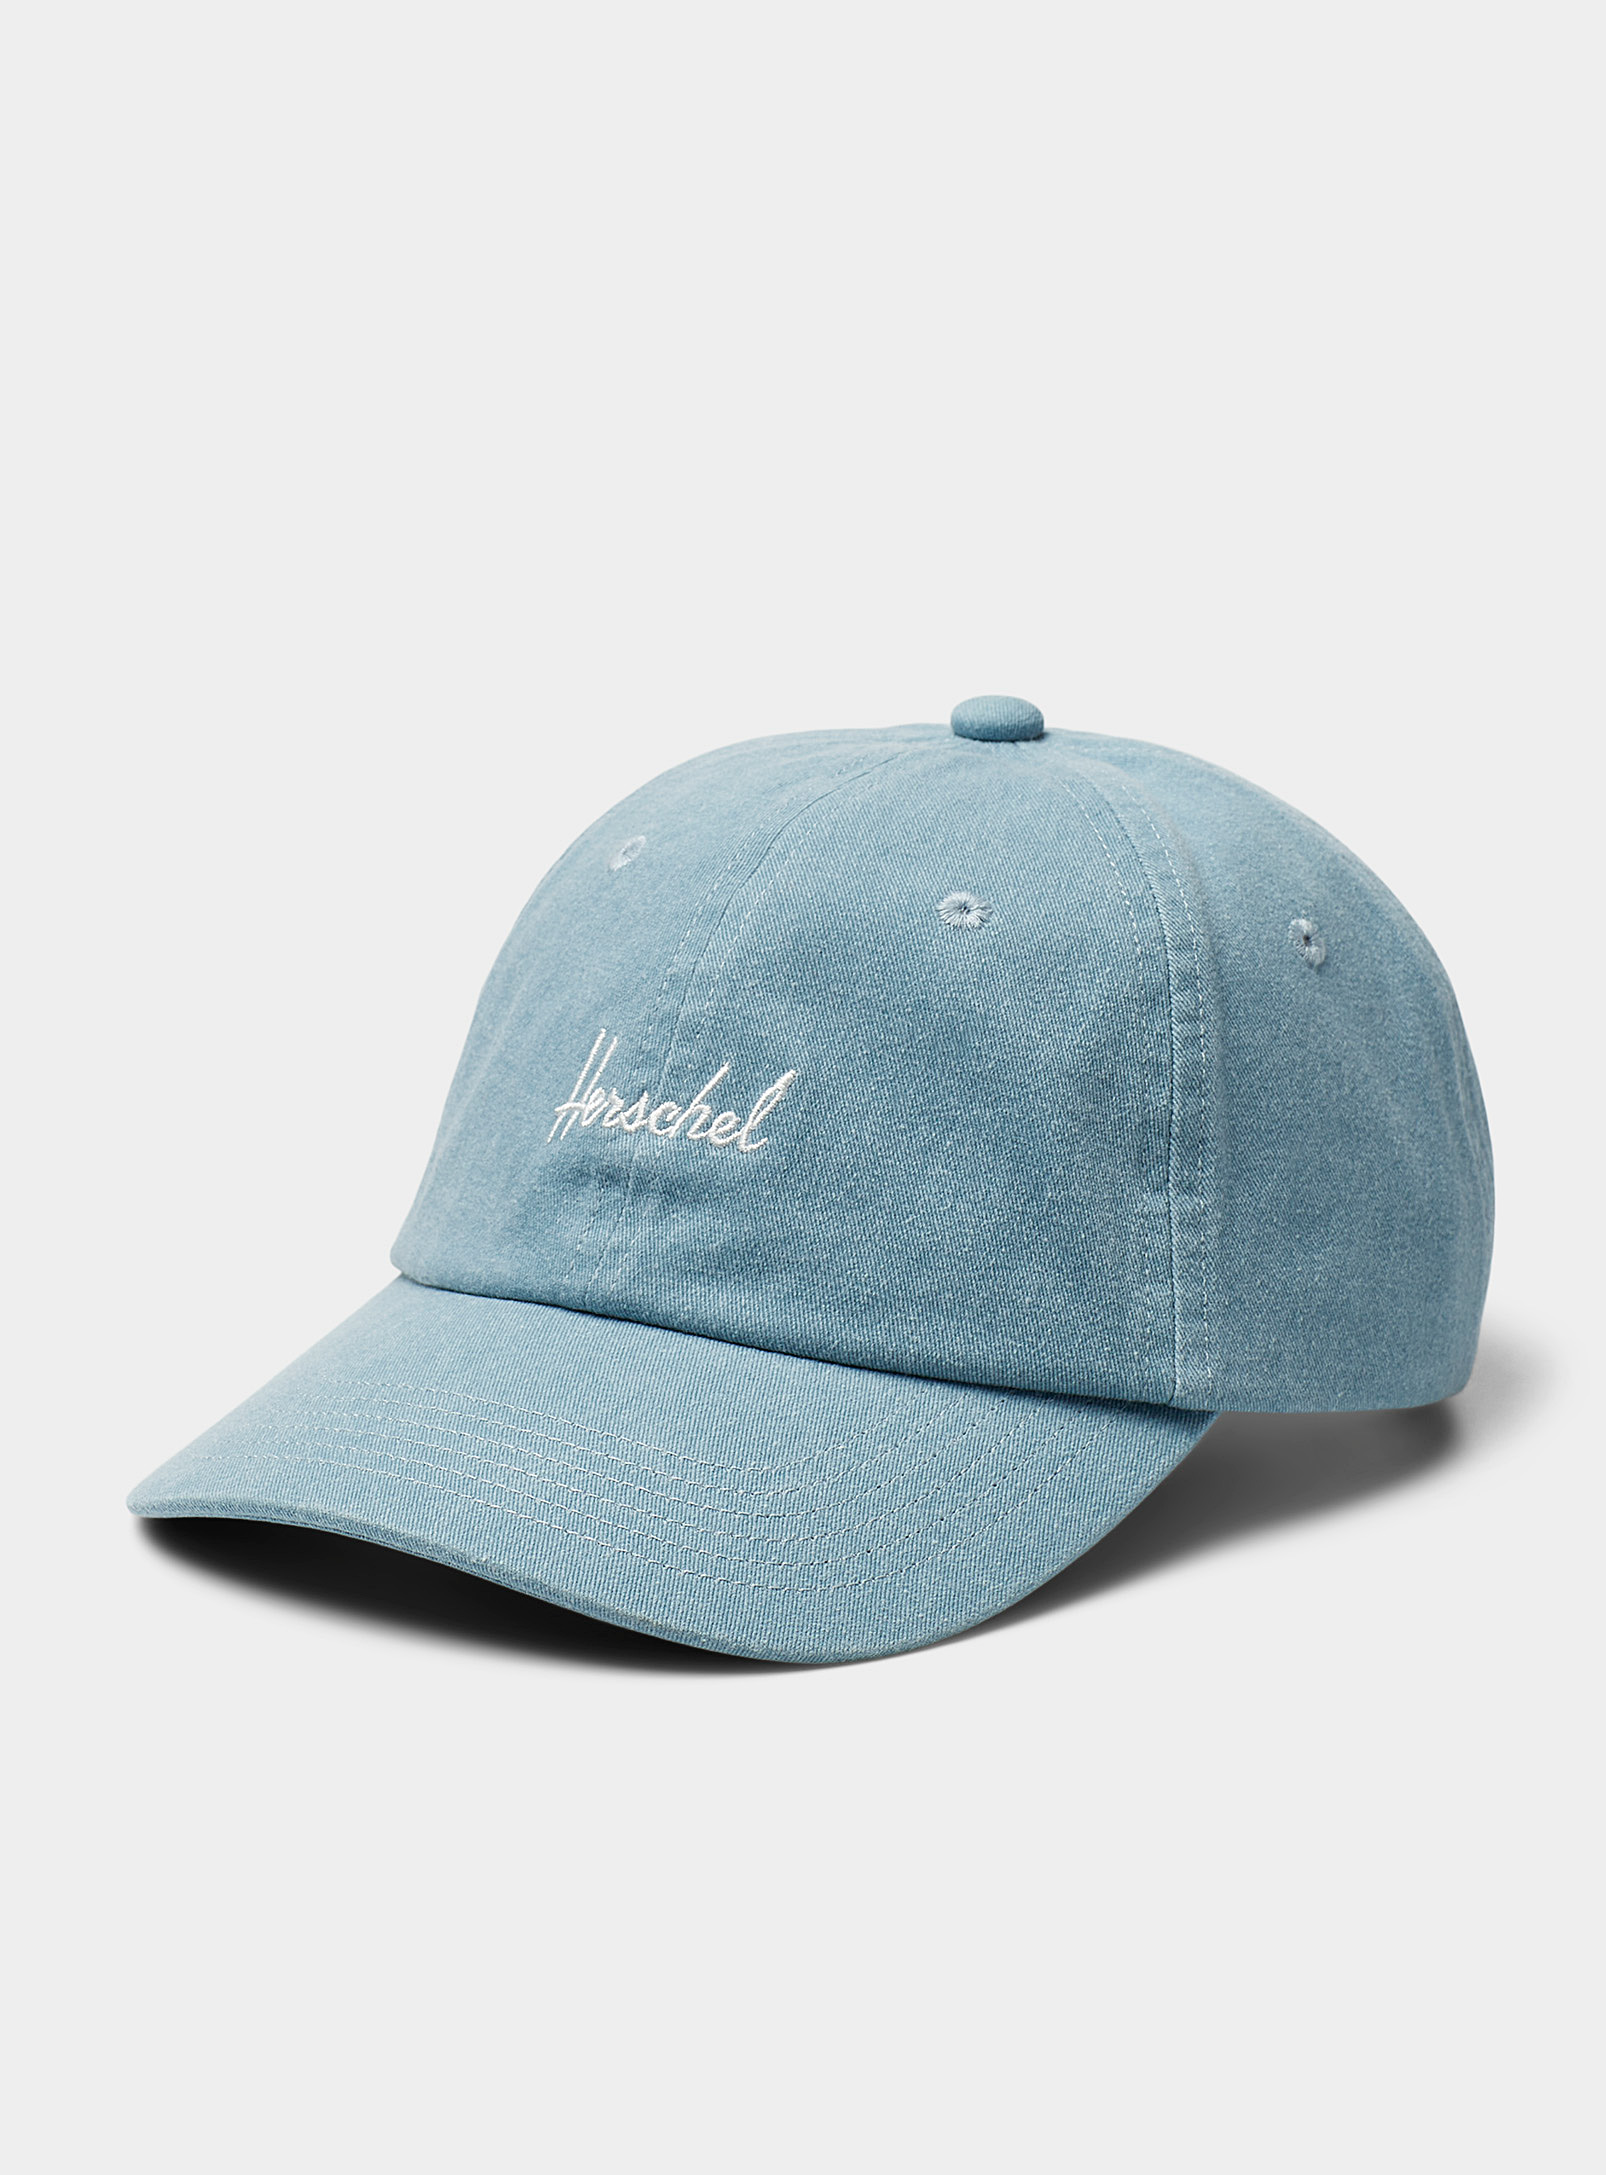 Herschel Logo Faded Baseball Cap In Blue